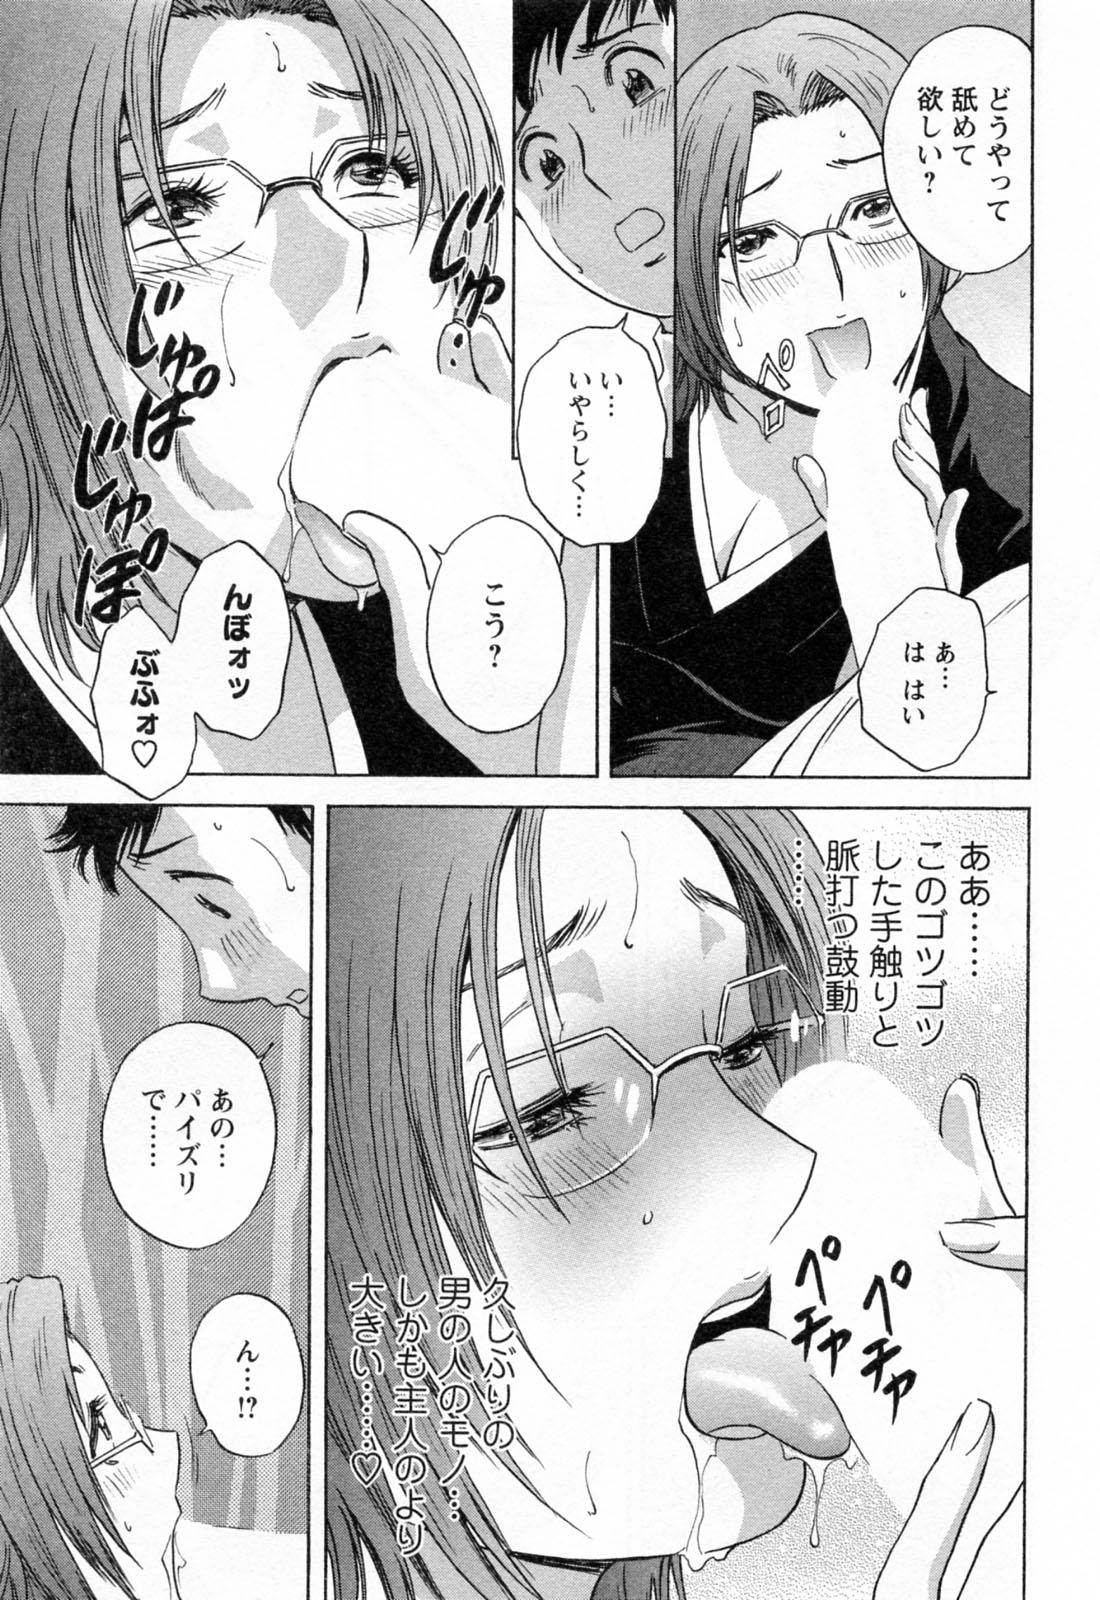 [Hidemaru] Mo-Retsu! Boin Sensei (Boing Boing Teacher) Vol.4 186